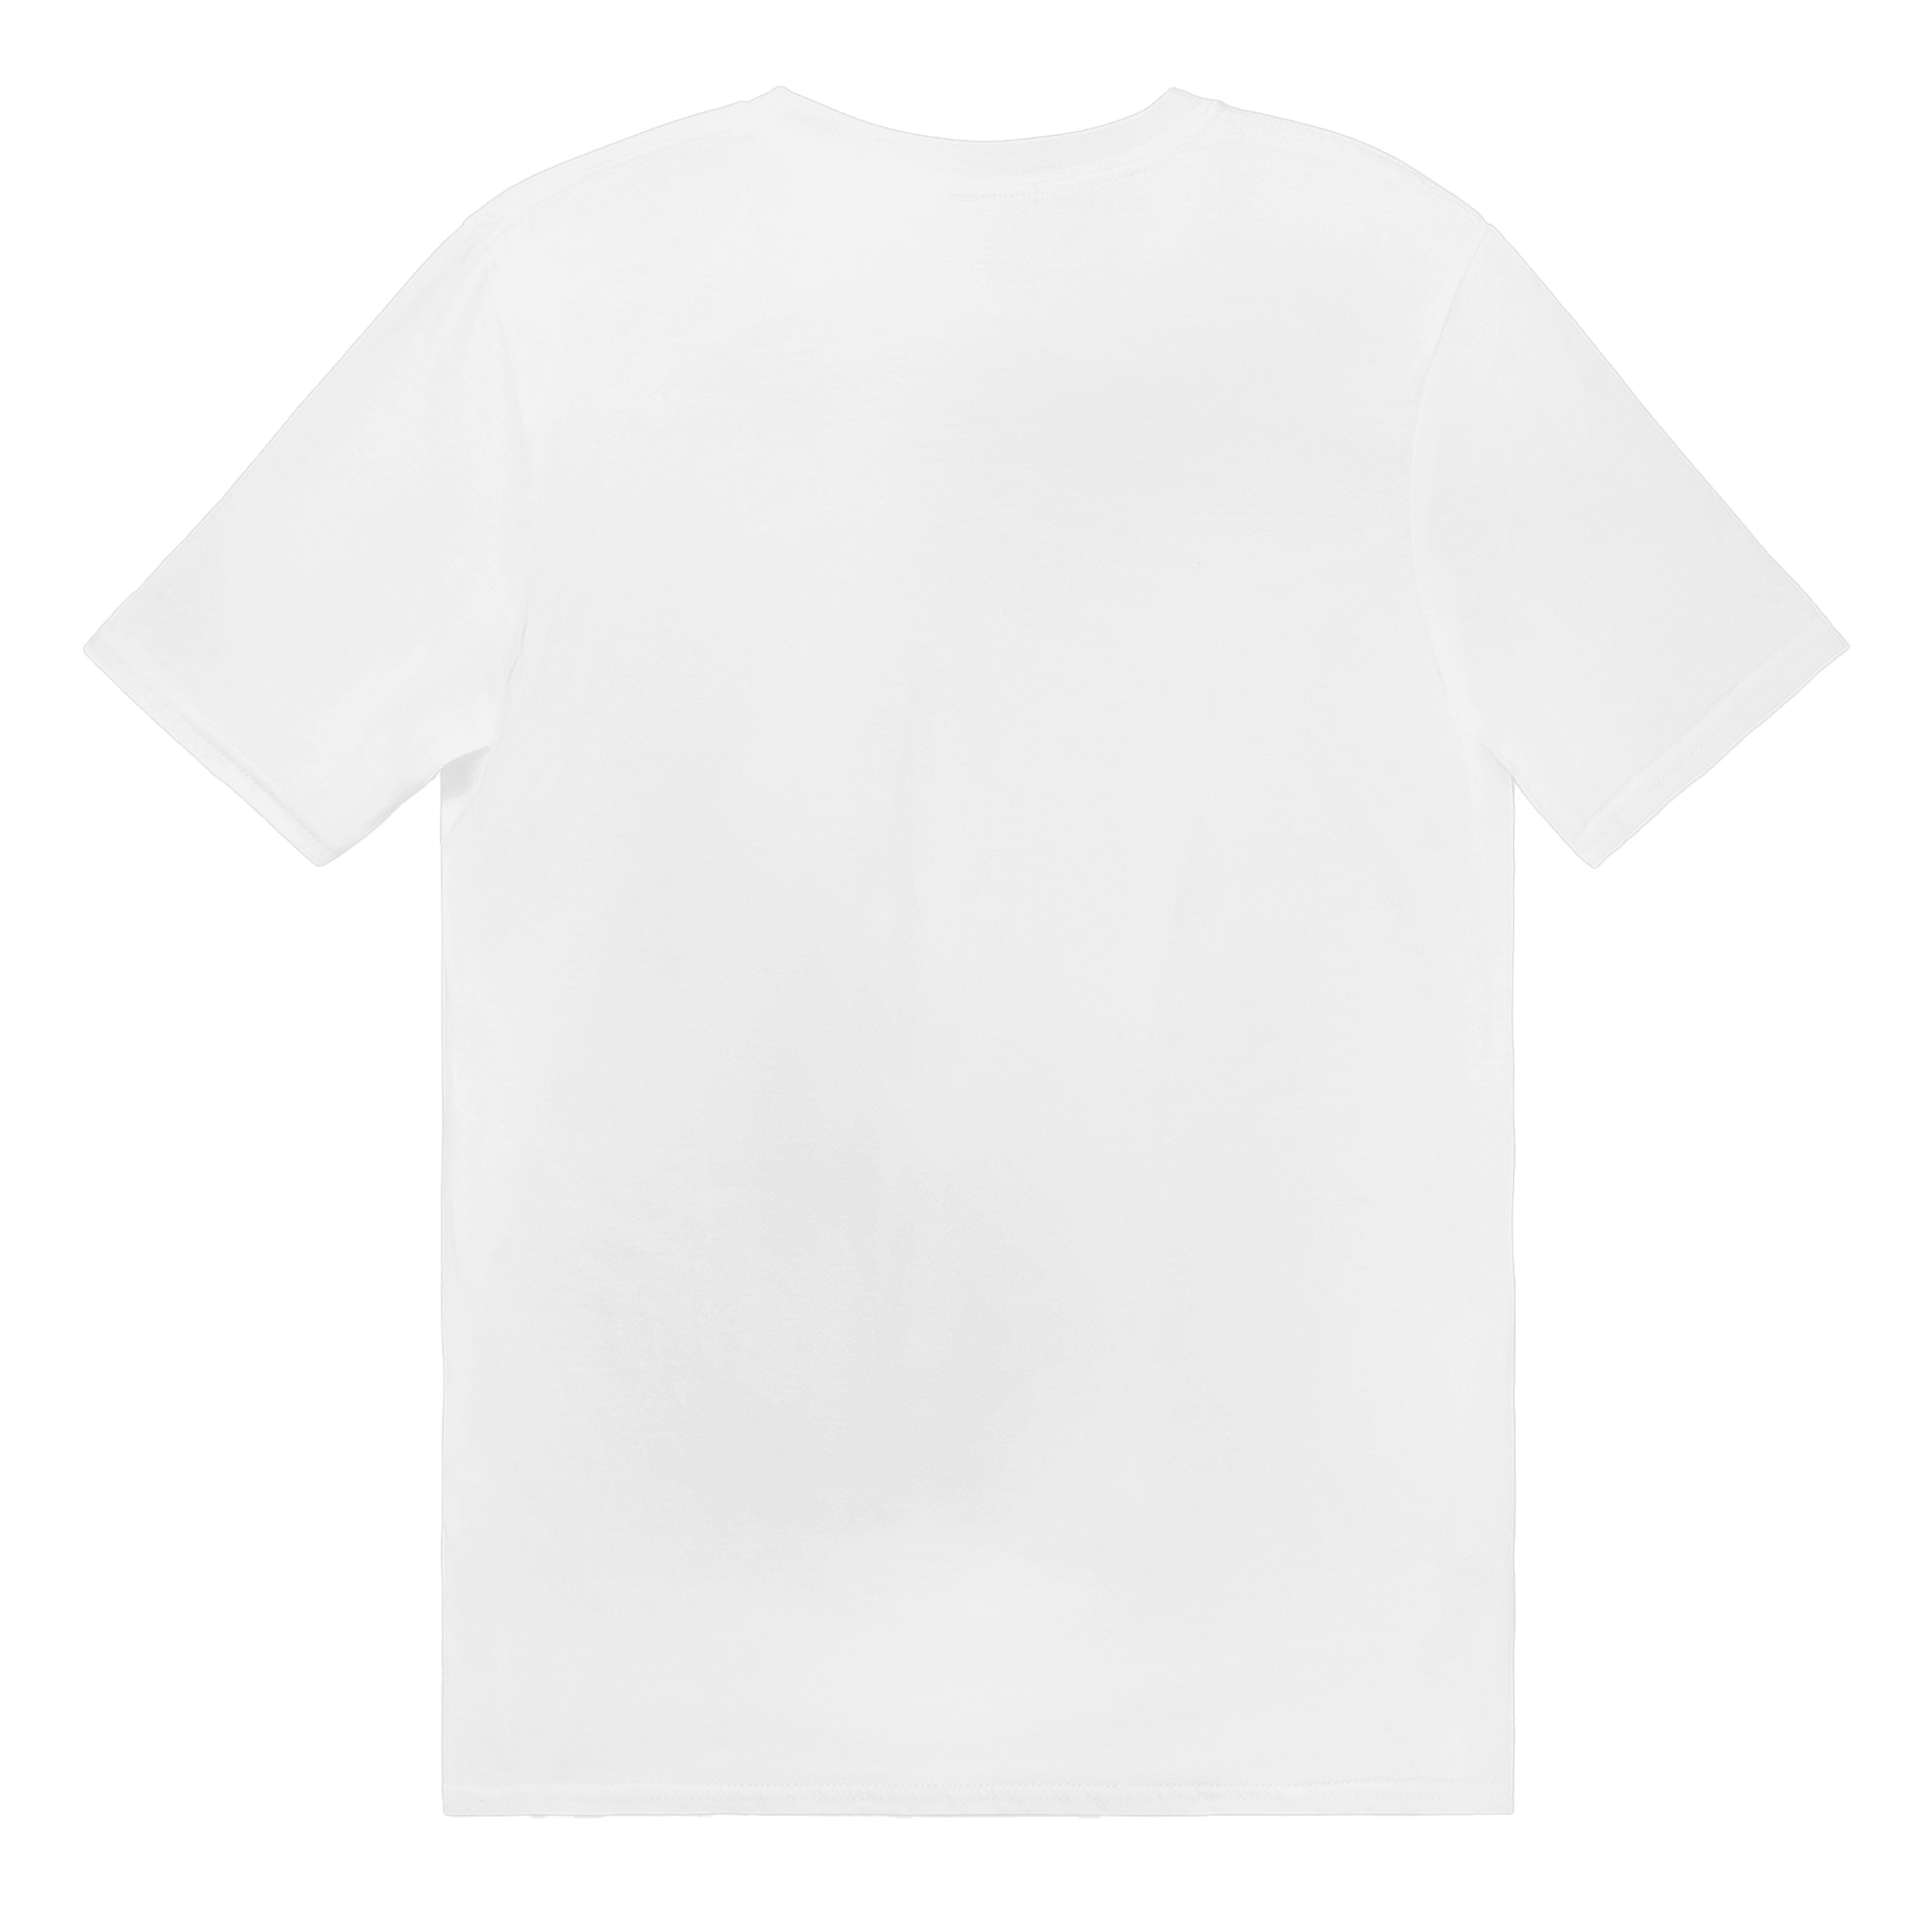 Vändkort litet - T-shirt 